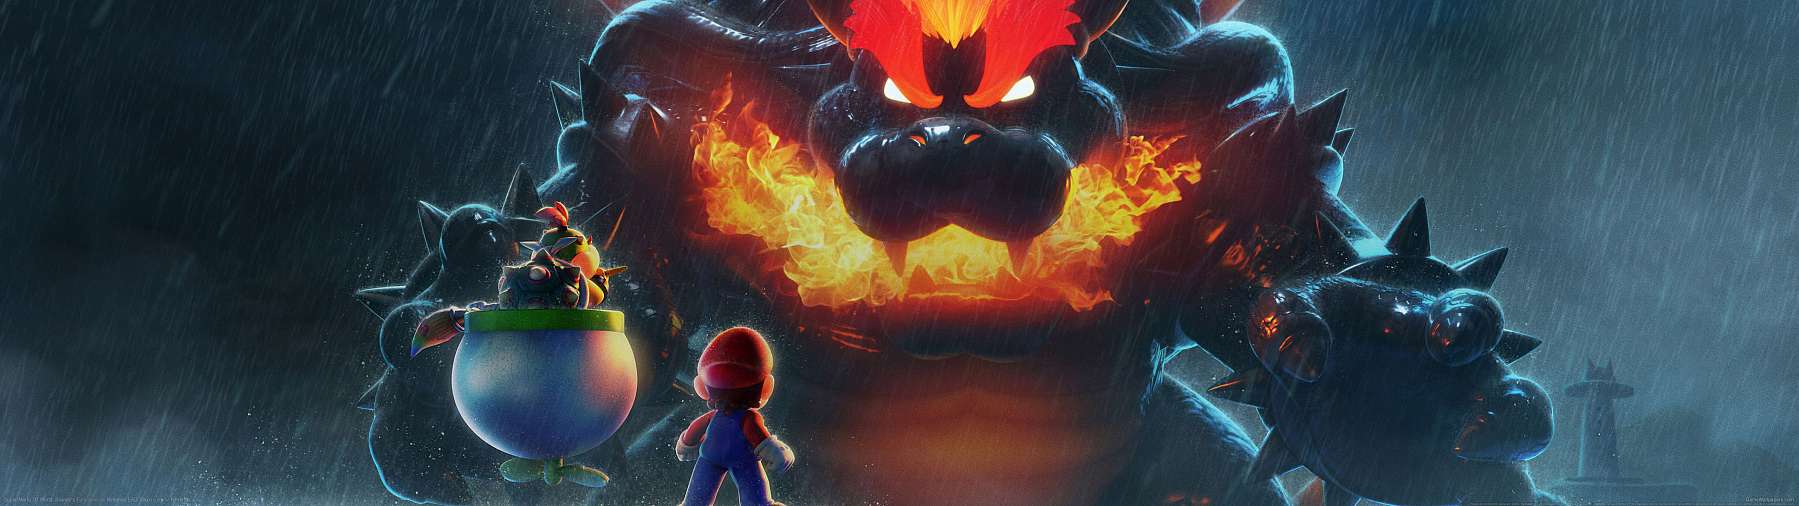 Super Mario 3D World: Bowser's Fury fond d'cran